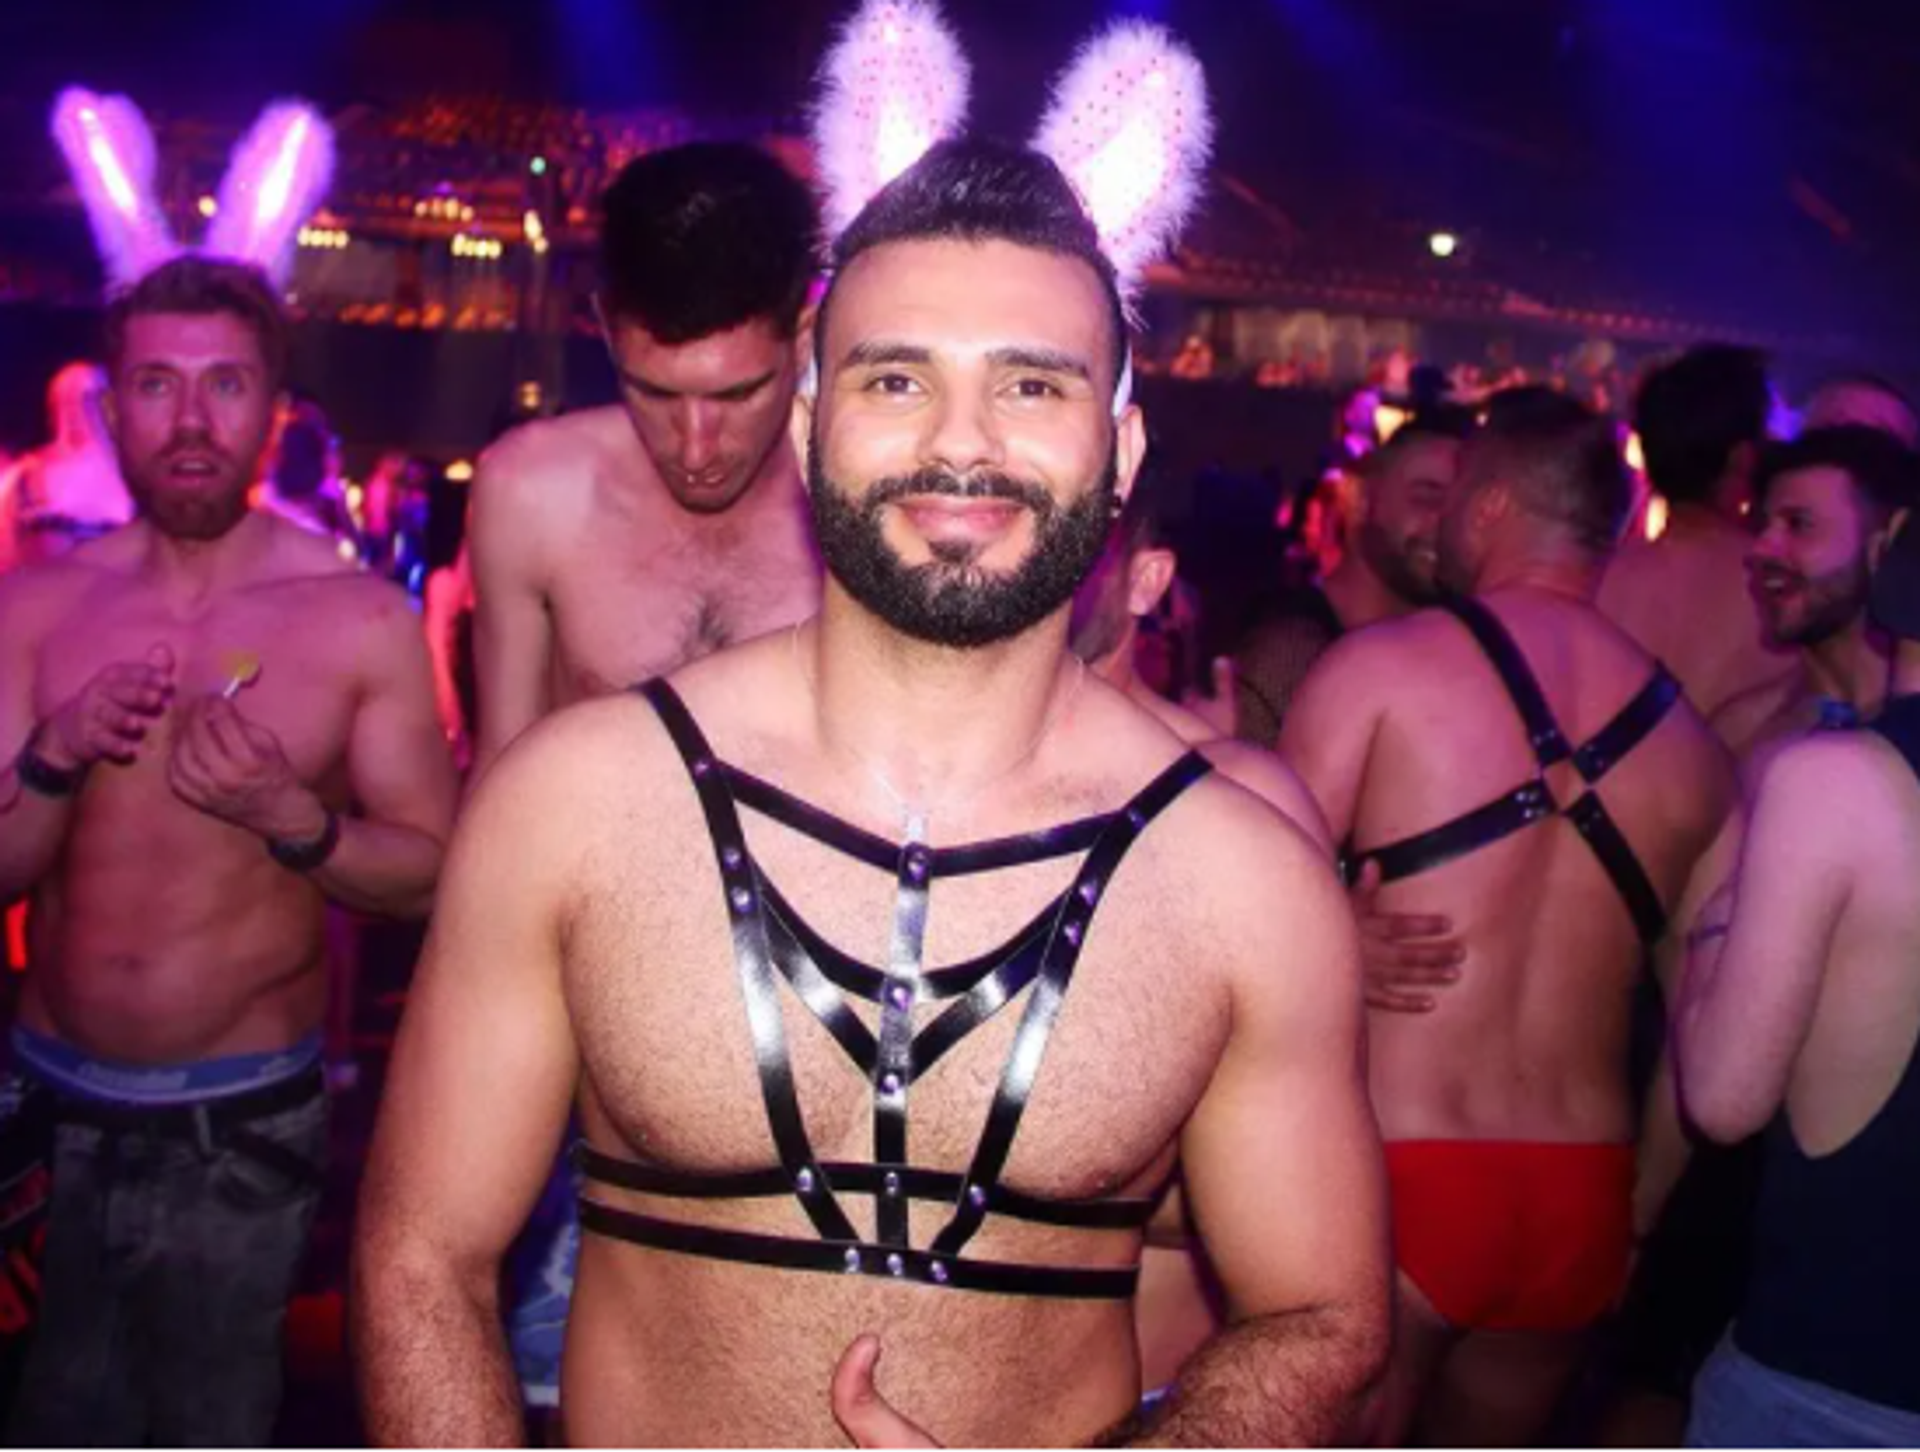 геи в клубе онлайн фото 24